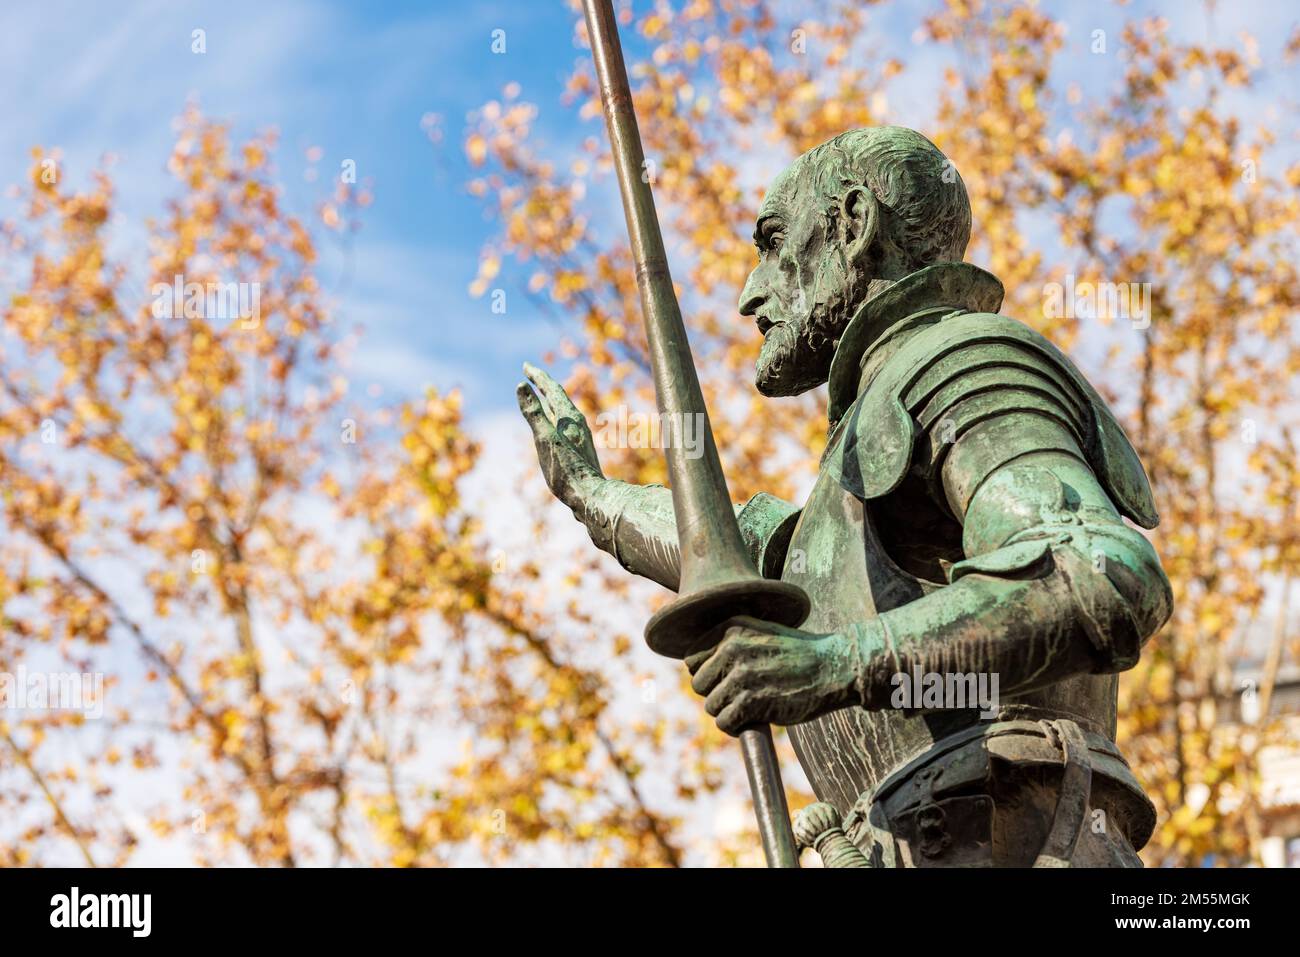 Statua in bronzo di Don Chisciotte de la Mancha, parte del monumento a Miguel de Cervantes, 1929, in Plaza de Espana, Madrid centro, Spagna, Europa. Foto Stock